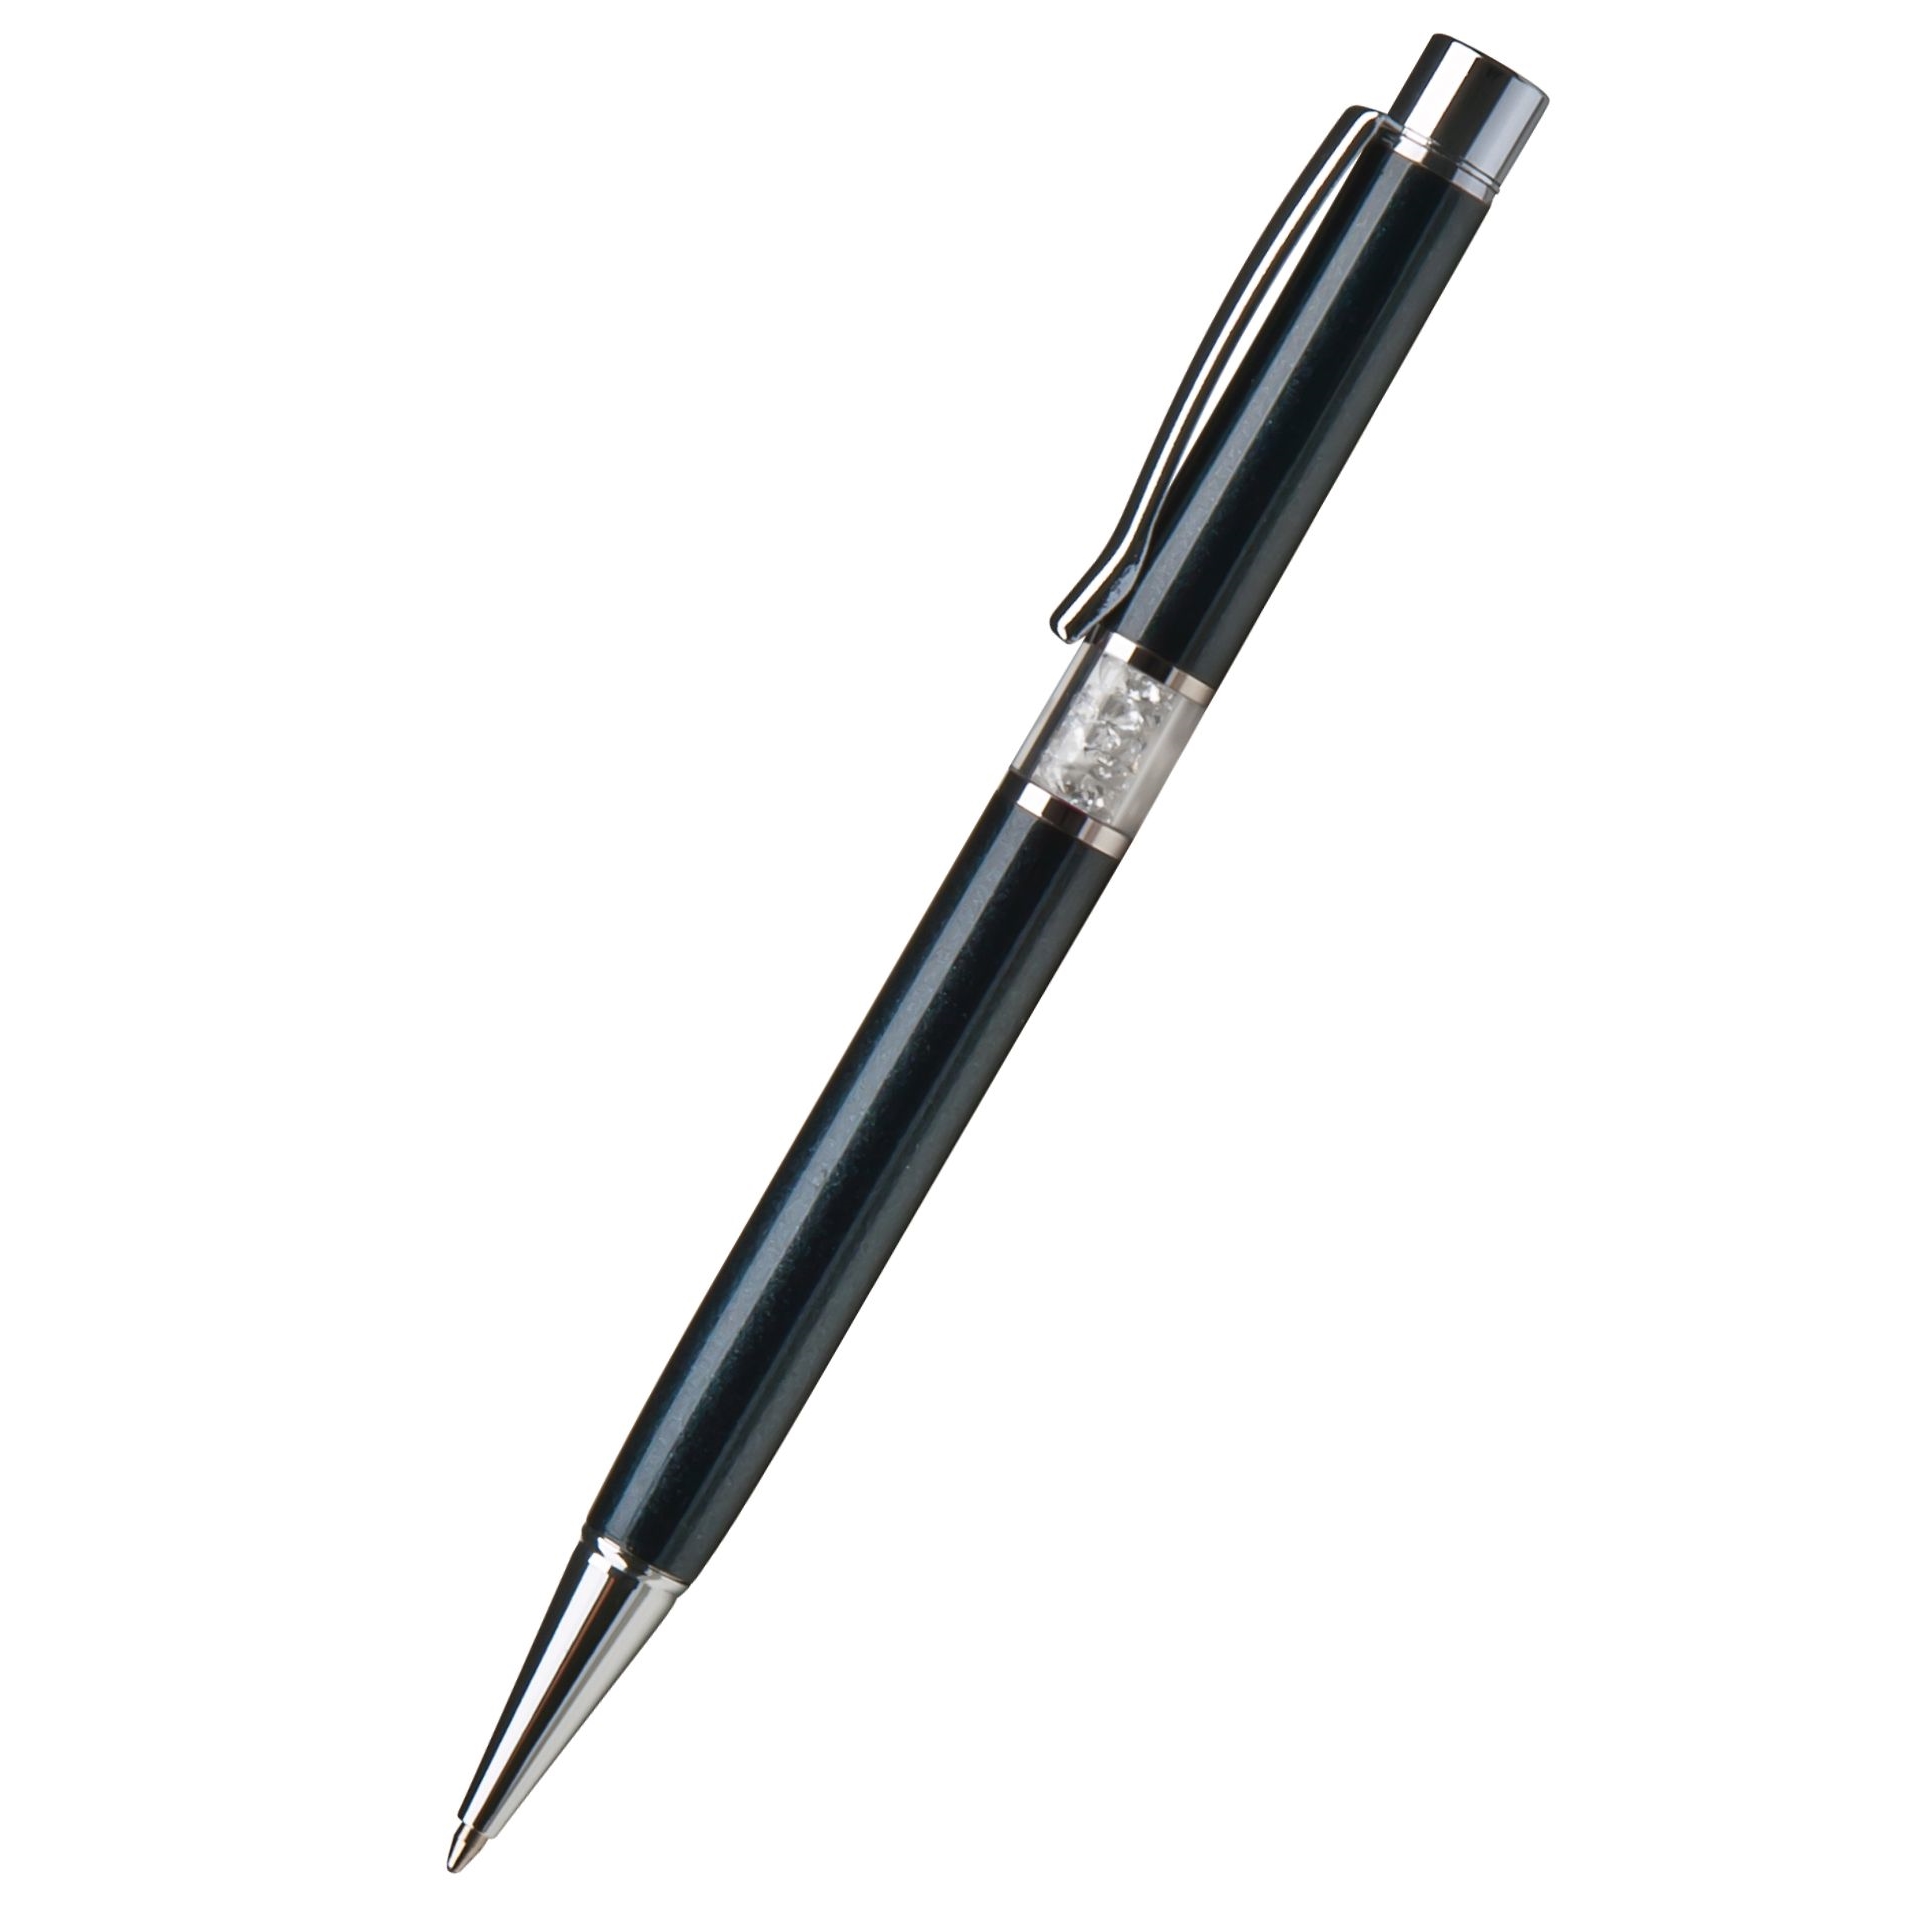 Kuličkové pero Art Crystella, černá s bílými krystaly Swarovski ve středu těla